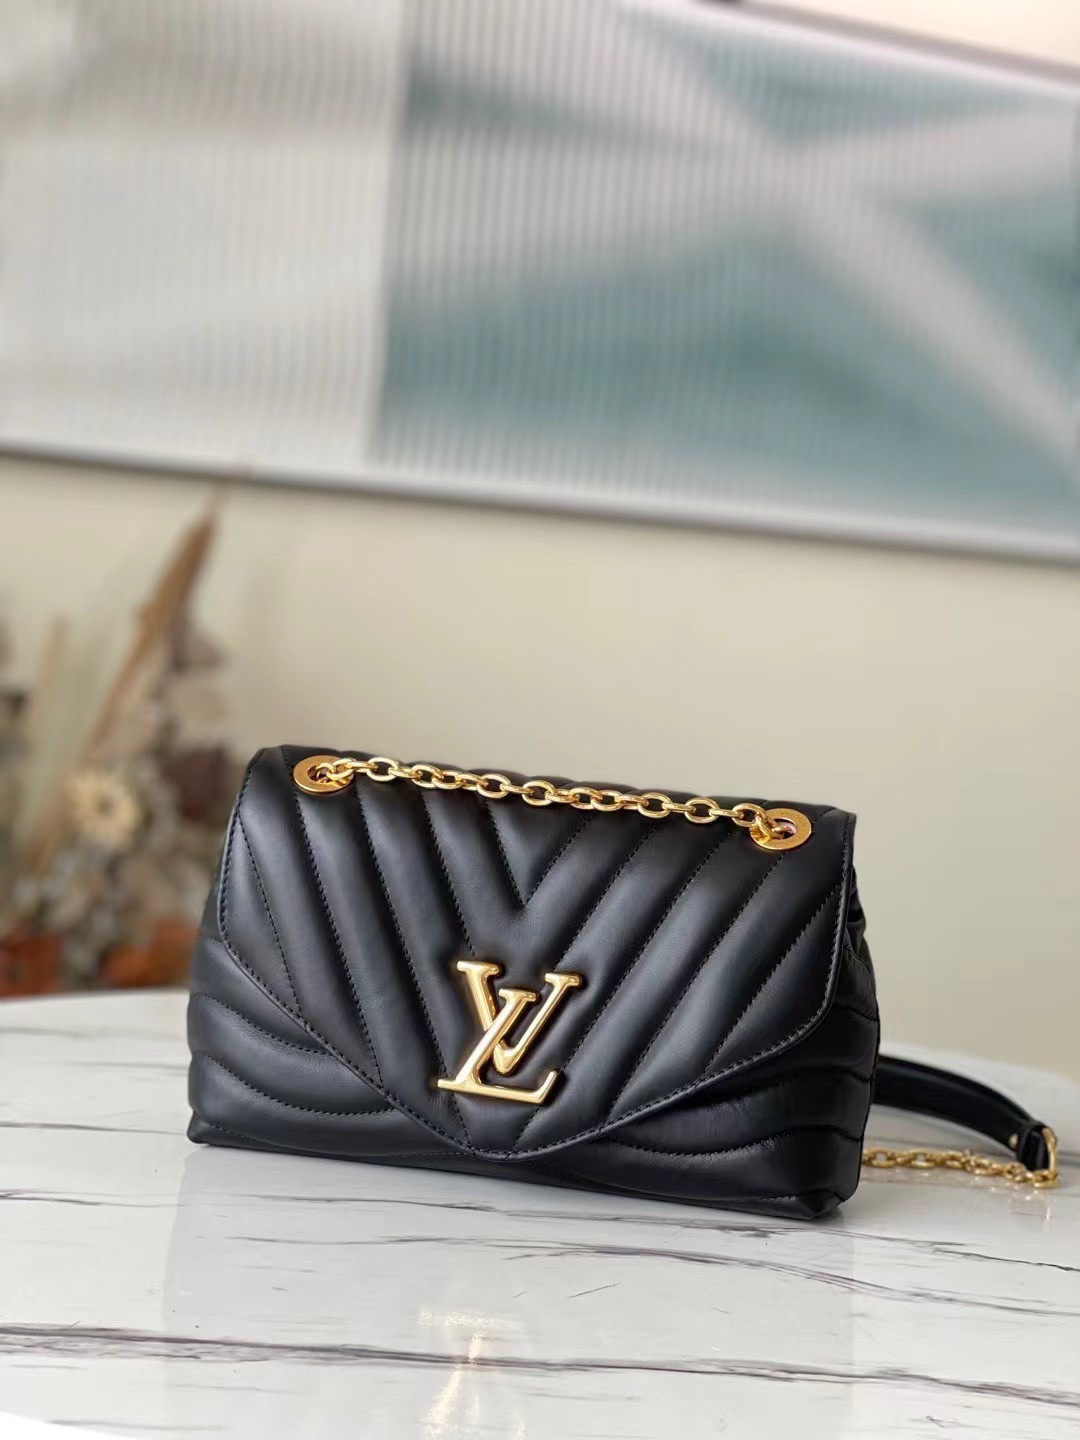 Replica Louis Vuitton New Wave Multi-Pochette Bag In Black Leather